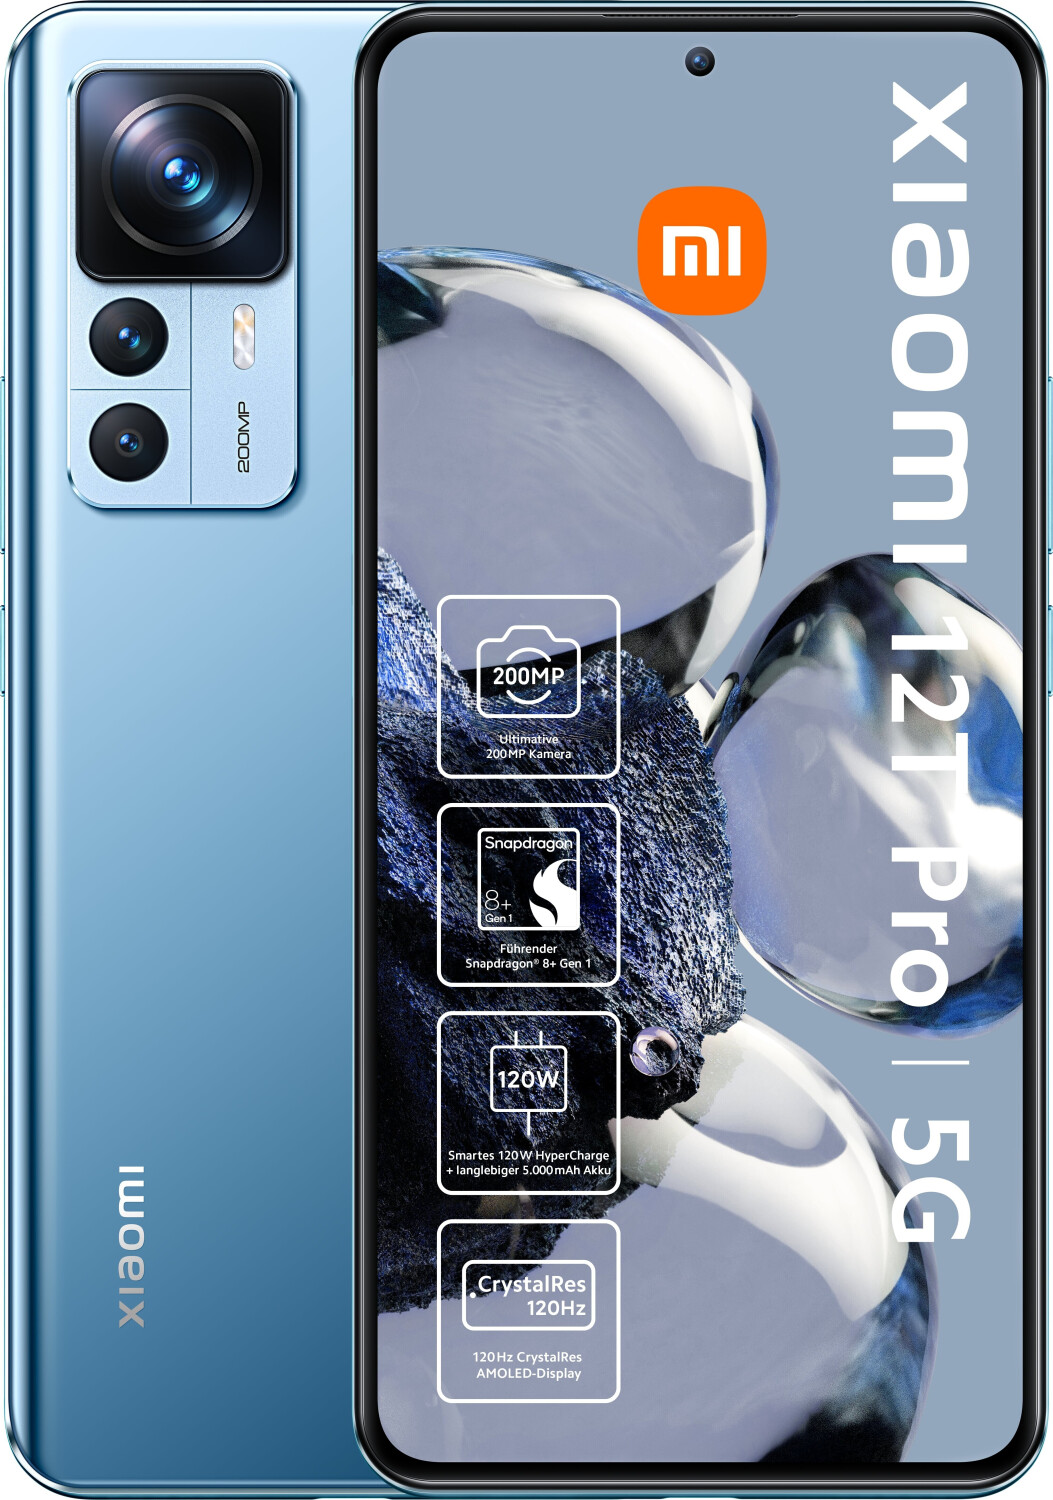 Xiaomi 12T Pro 8GB/256GB Azul - Teléfono móvil Reacondicionado Oficial